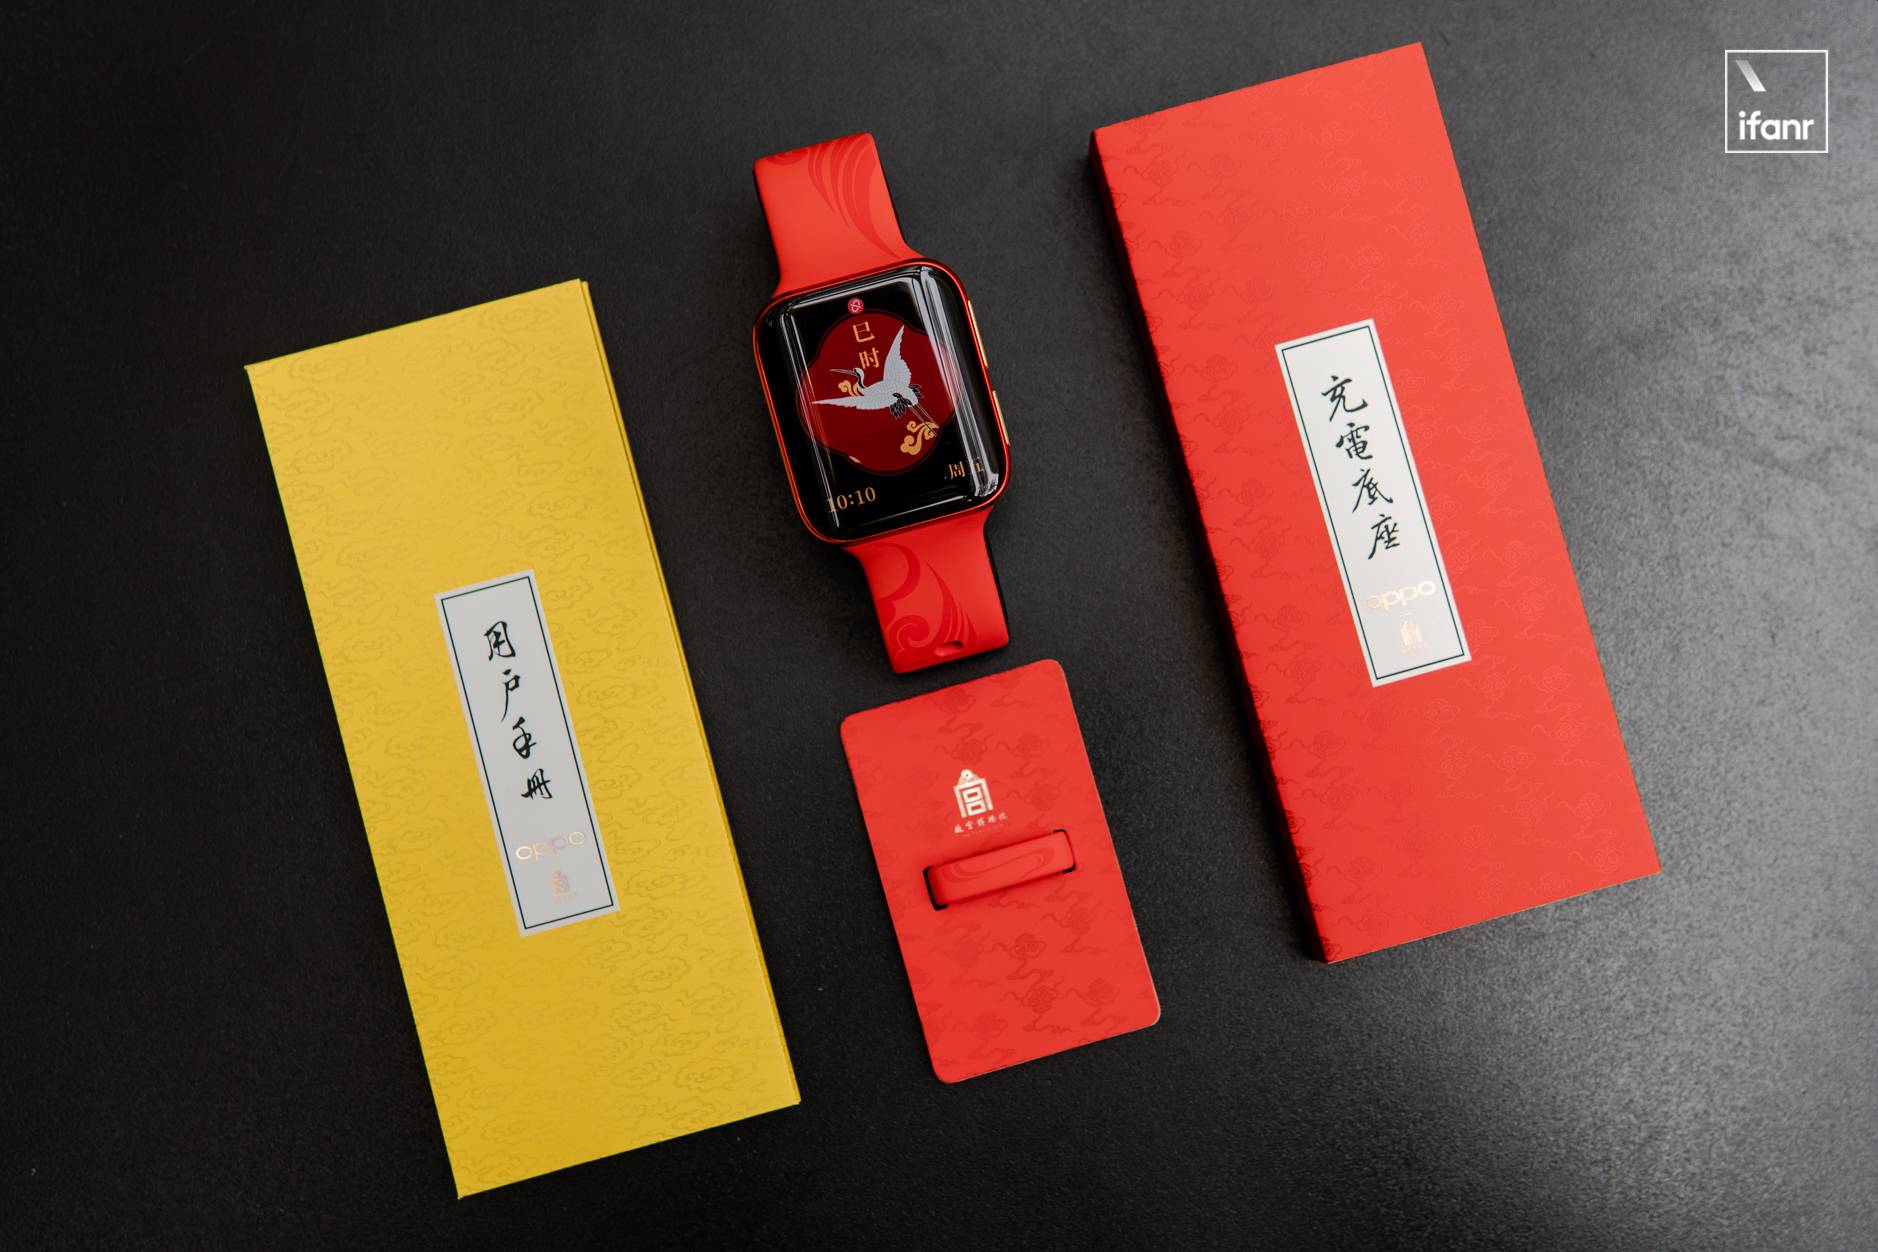 DSC04081 8 - OPPO x Forbidden City Smart Wearable Co-branded Series Picture Reward: “Red” è il leader, “Gold” è pieno di giada